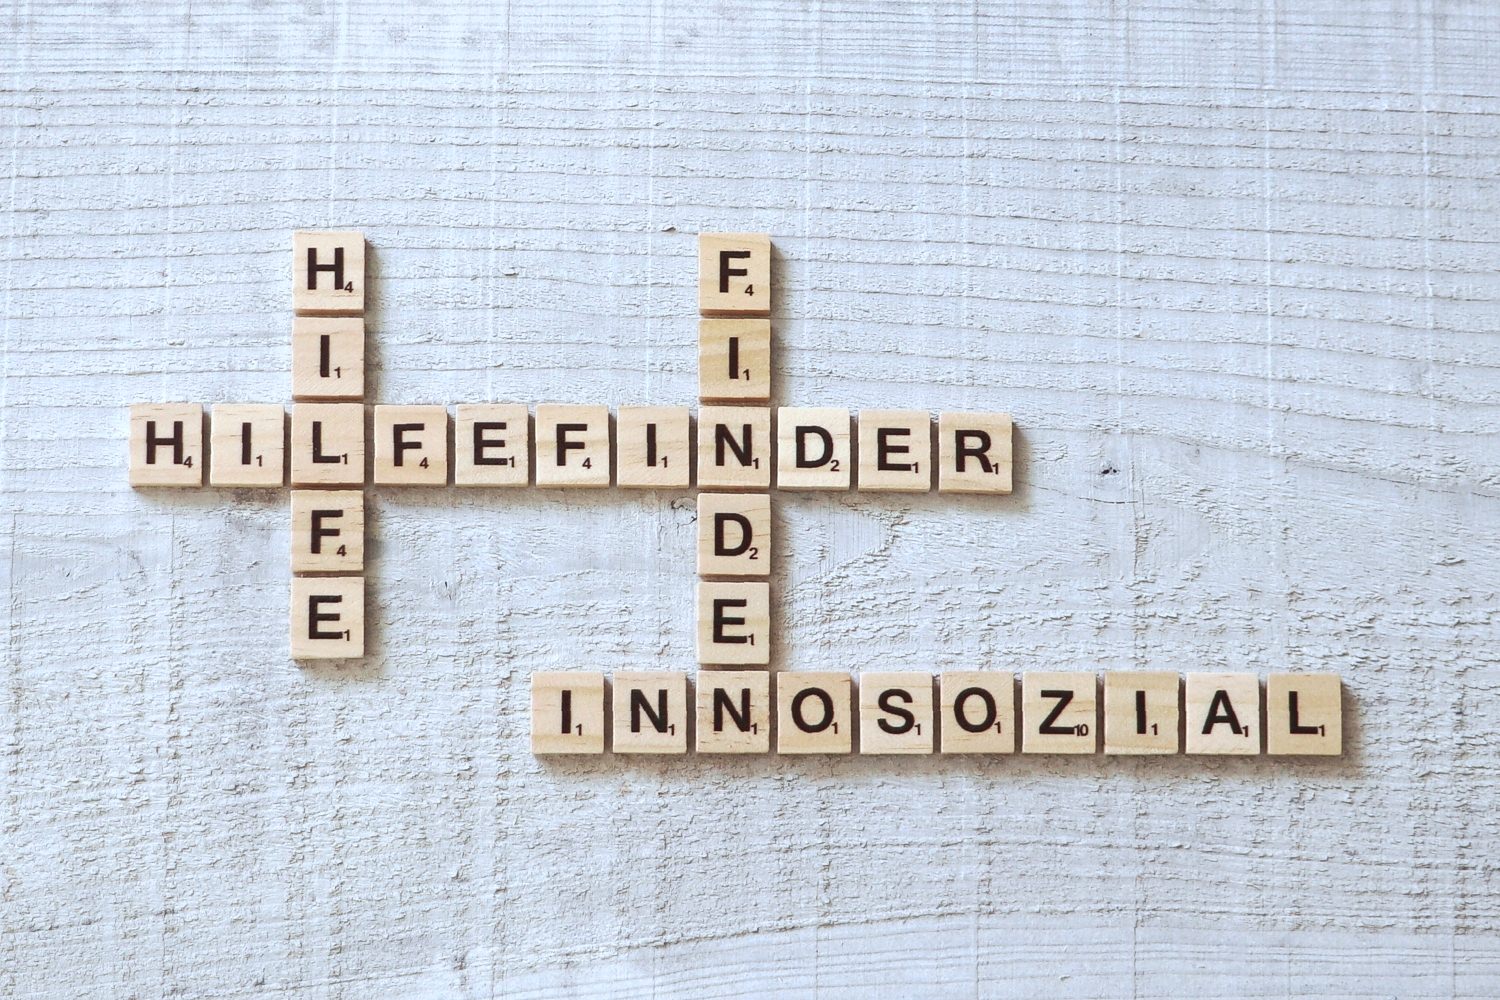 Bild zeigt: Vier Wörter aus den Buchstaben eines Scrabble-Spiels: Hilfefinder, Innosozial, Hilfe und Finden